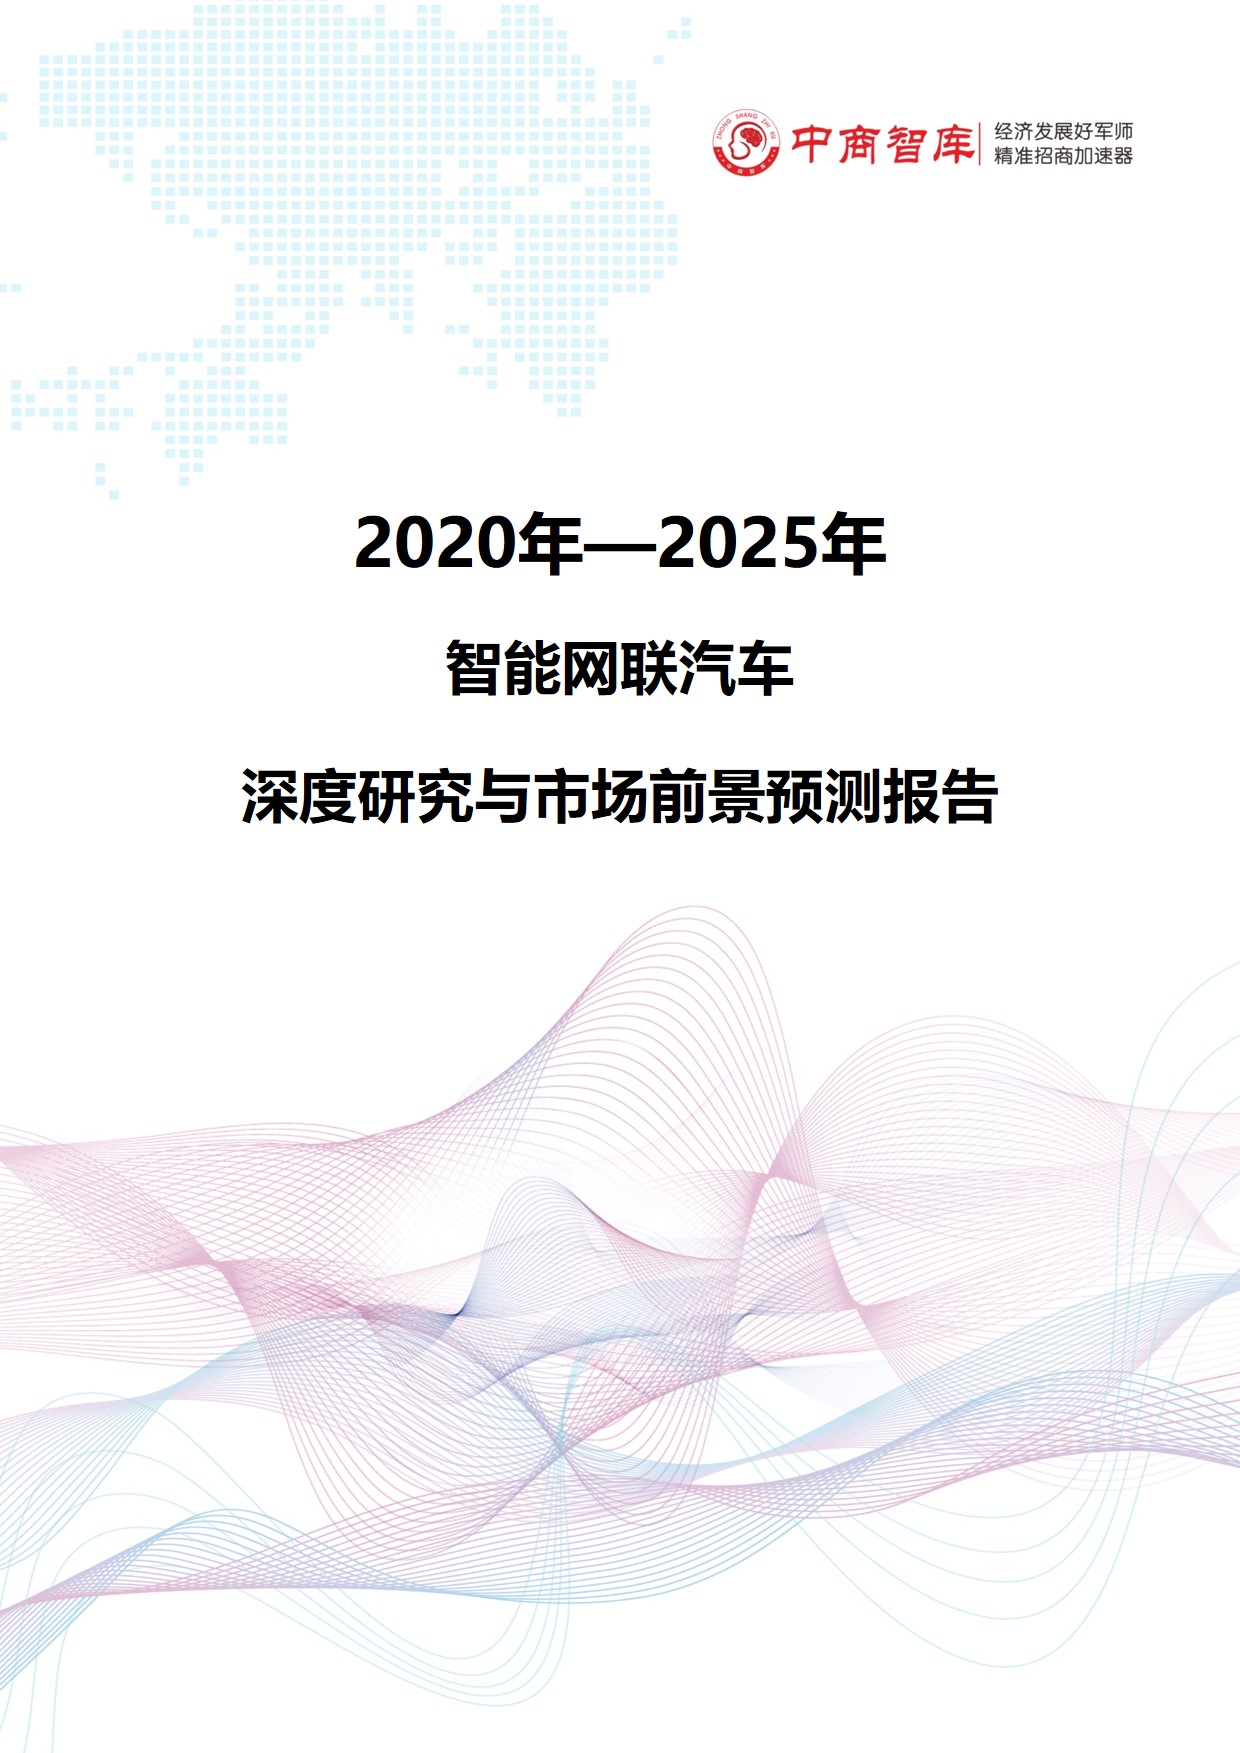 《2020-2025年智能网联汽车行业深度研究与市场前景预测报告》